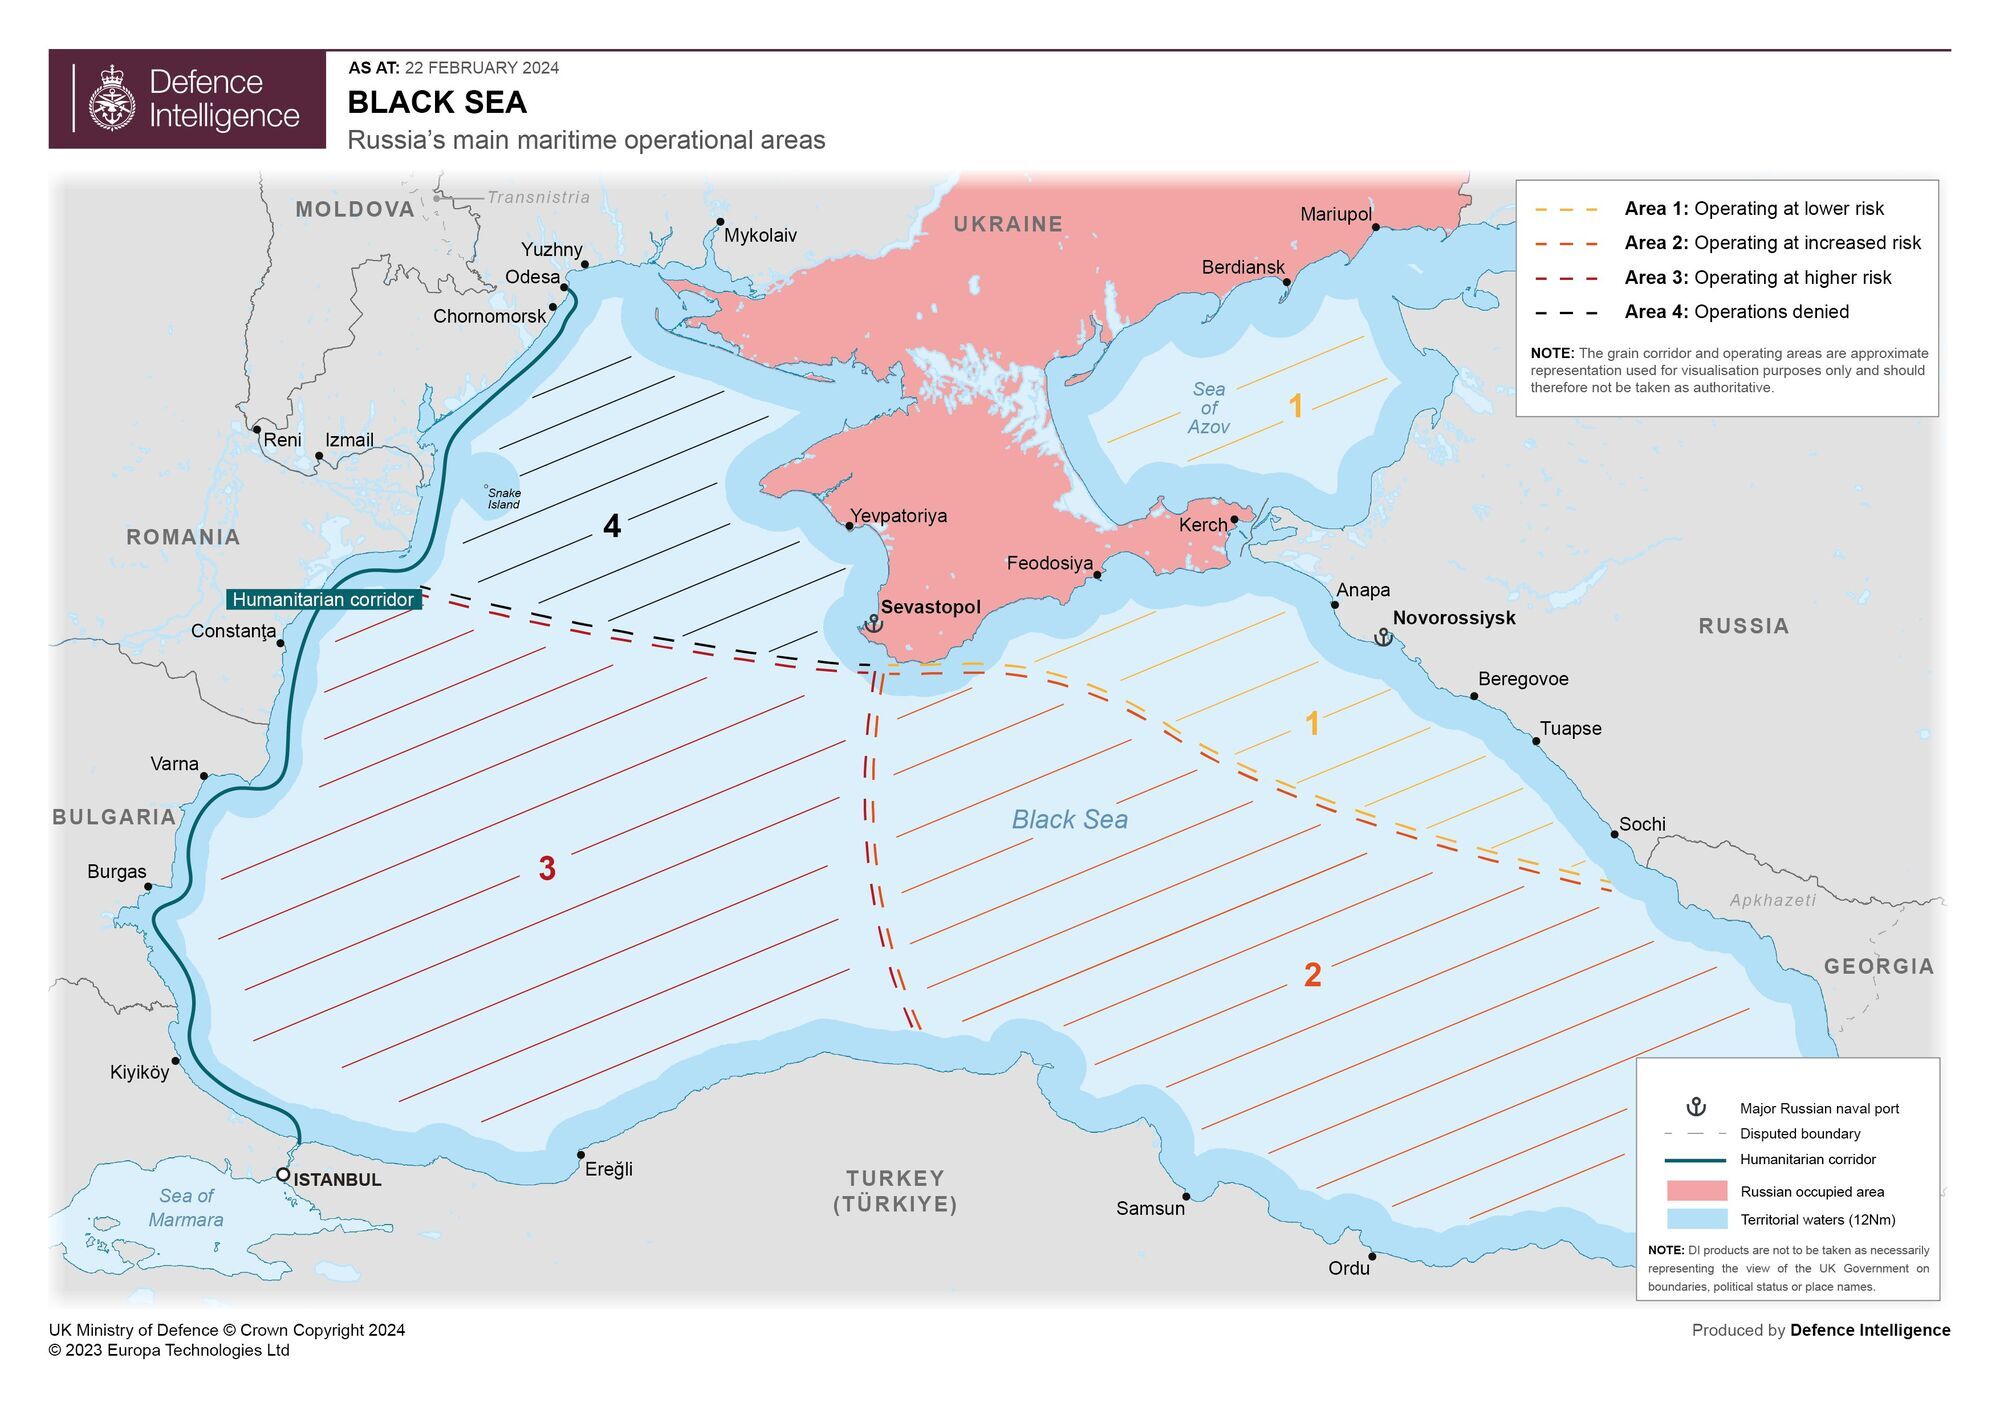 Украина нанесла РФ стратегическое поражение в Черном море – британская разведка